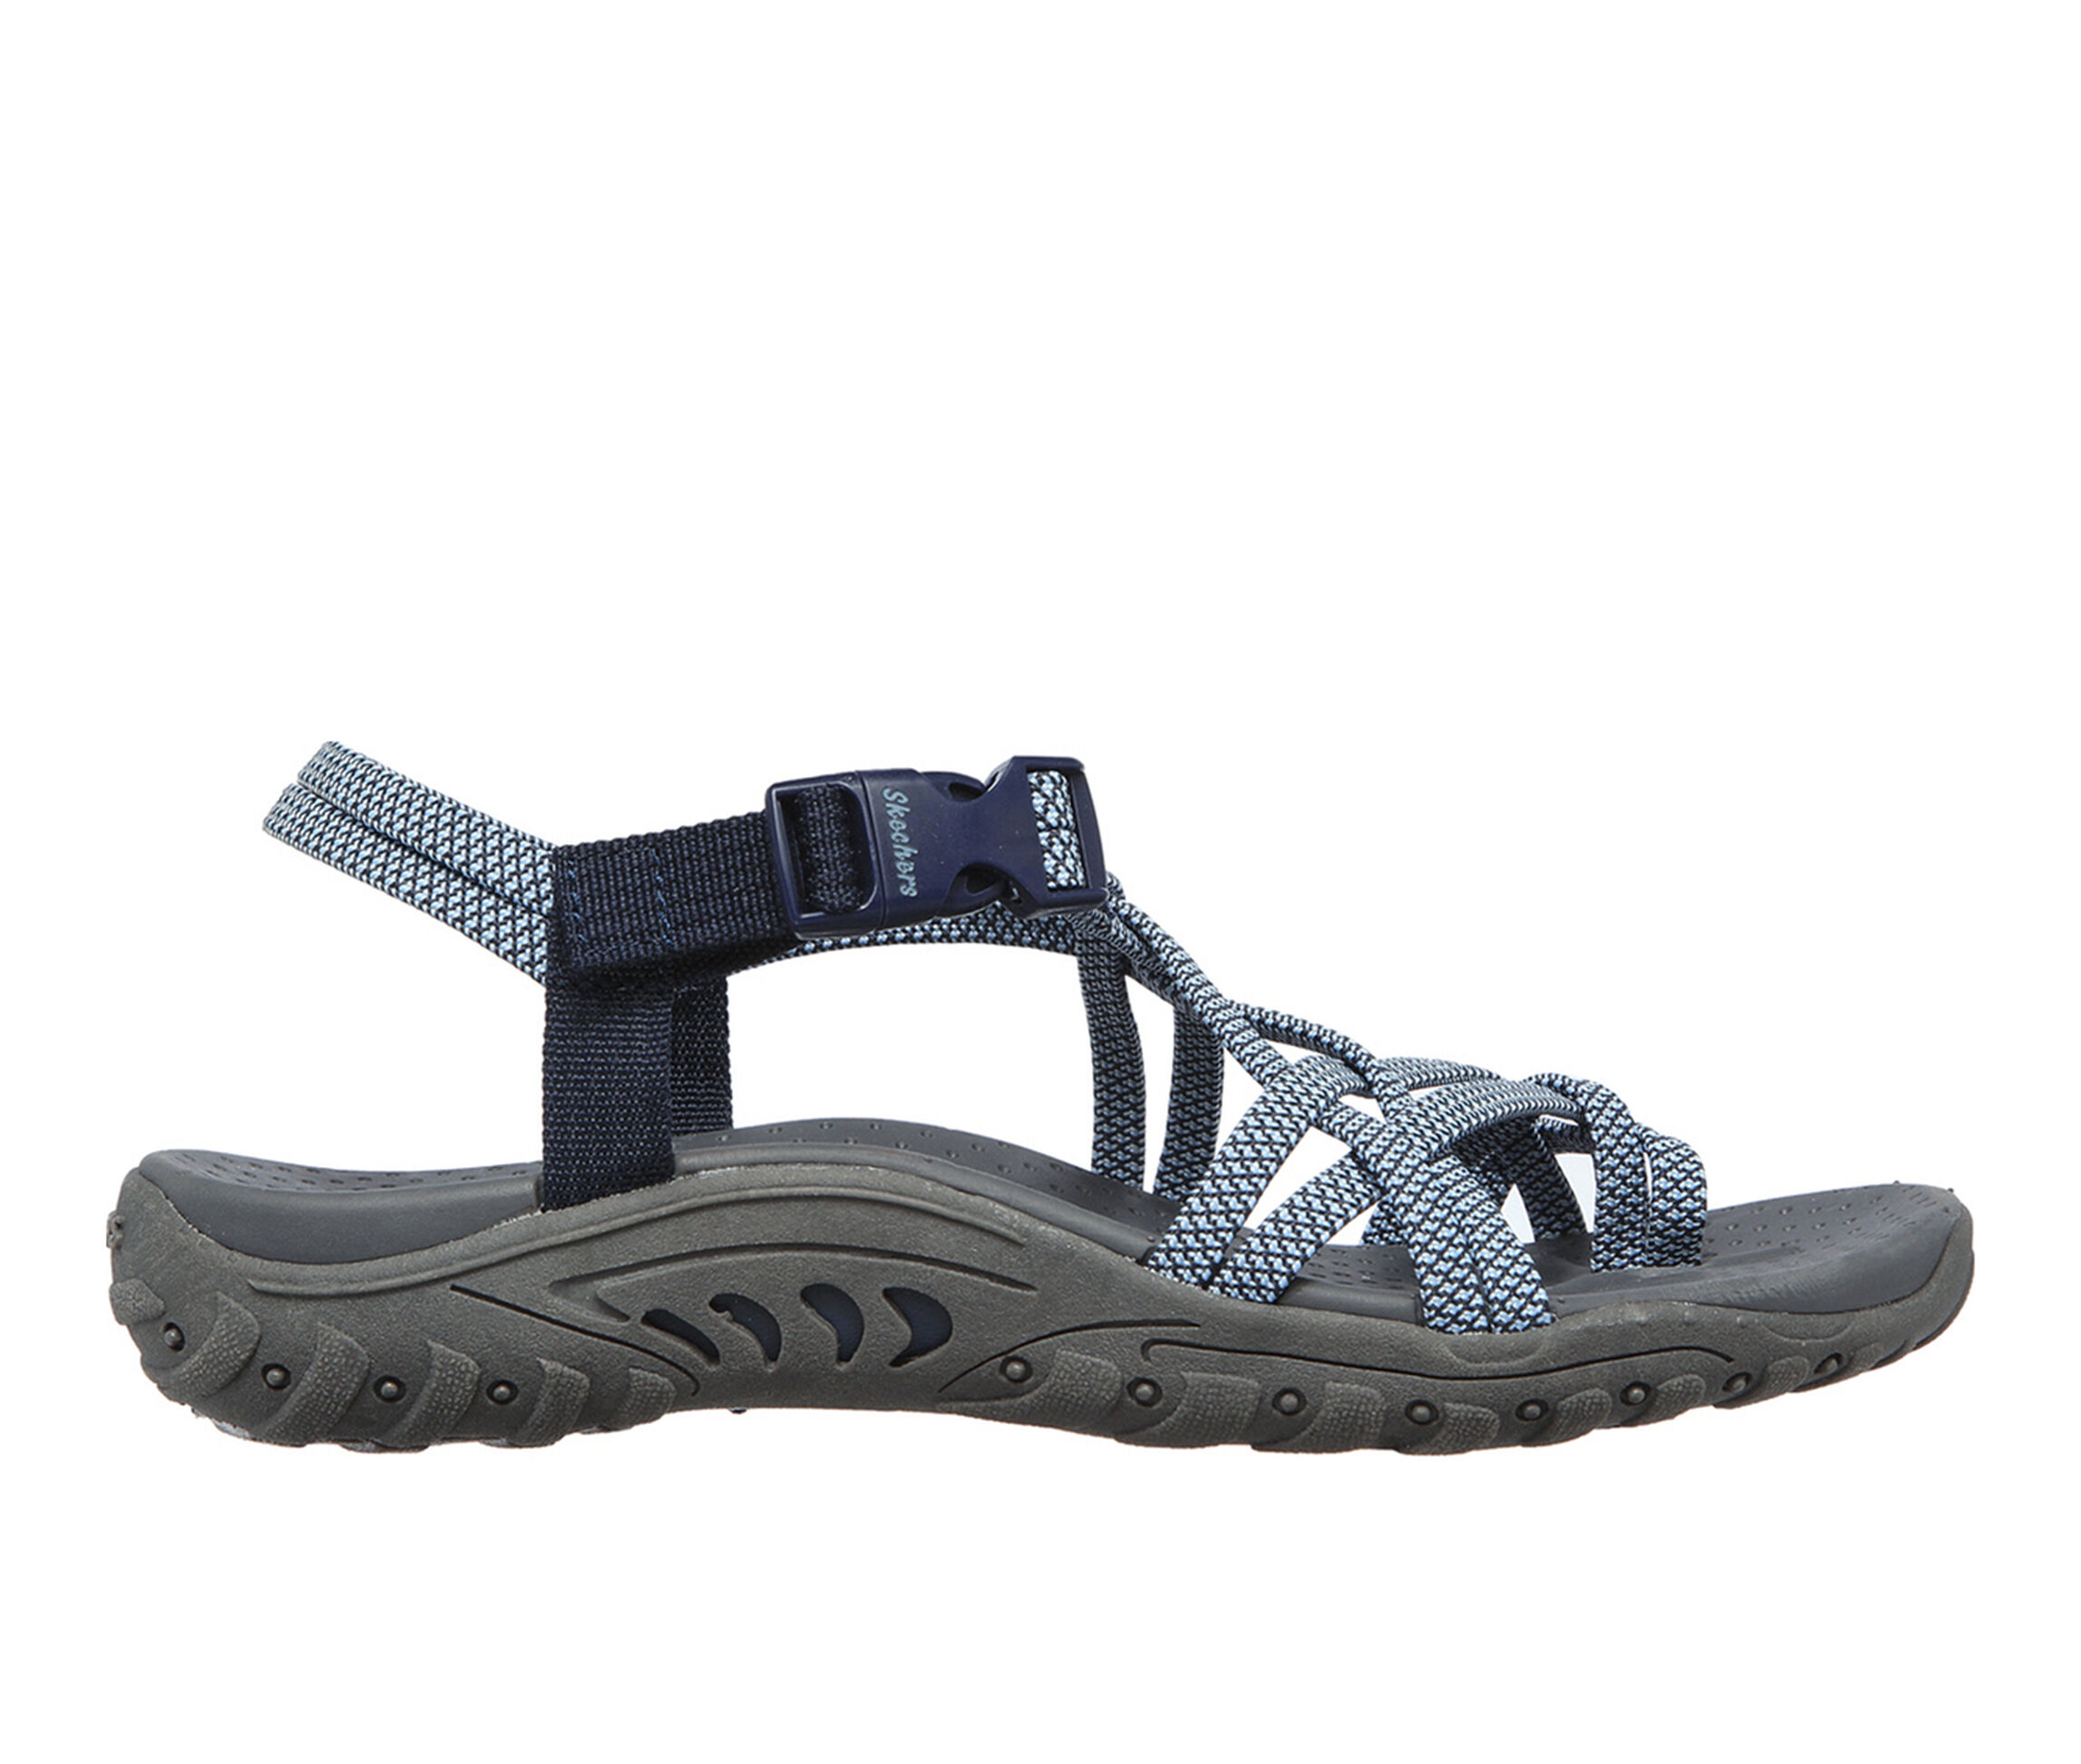 Skechers Sandals | Shoe Carnival